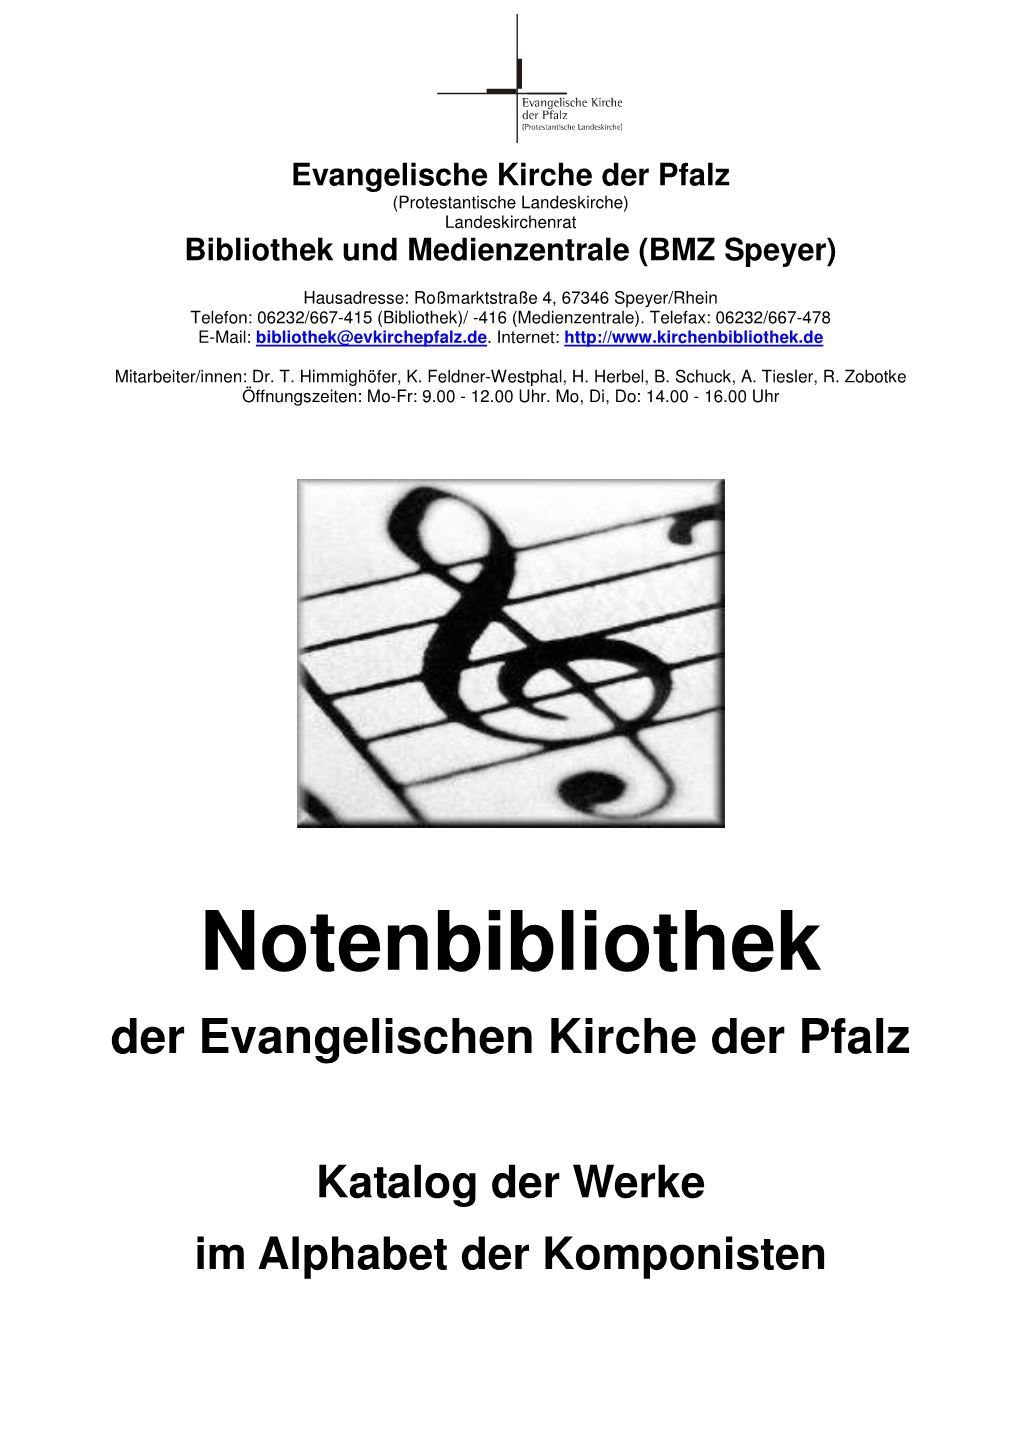 Notenbibliothek Der Evangelischen Kirche Der Pfalz